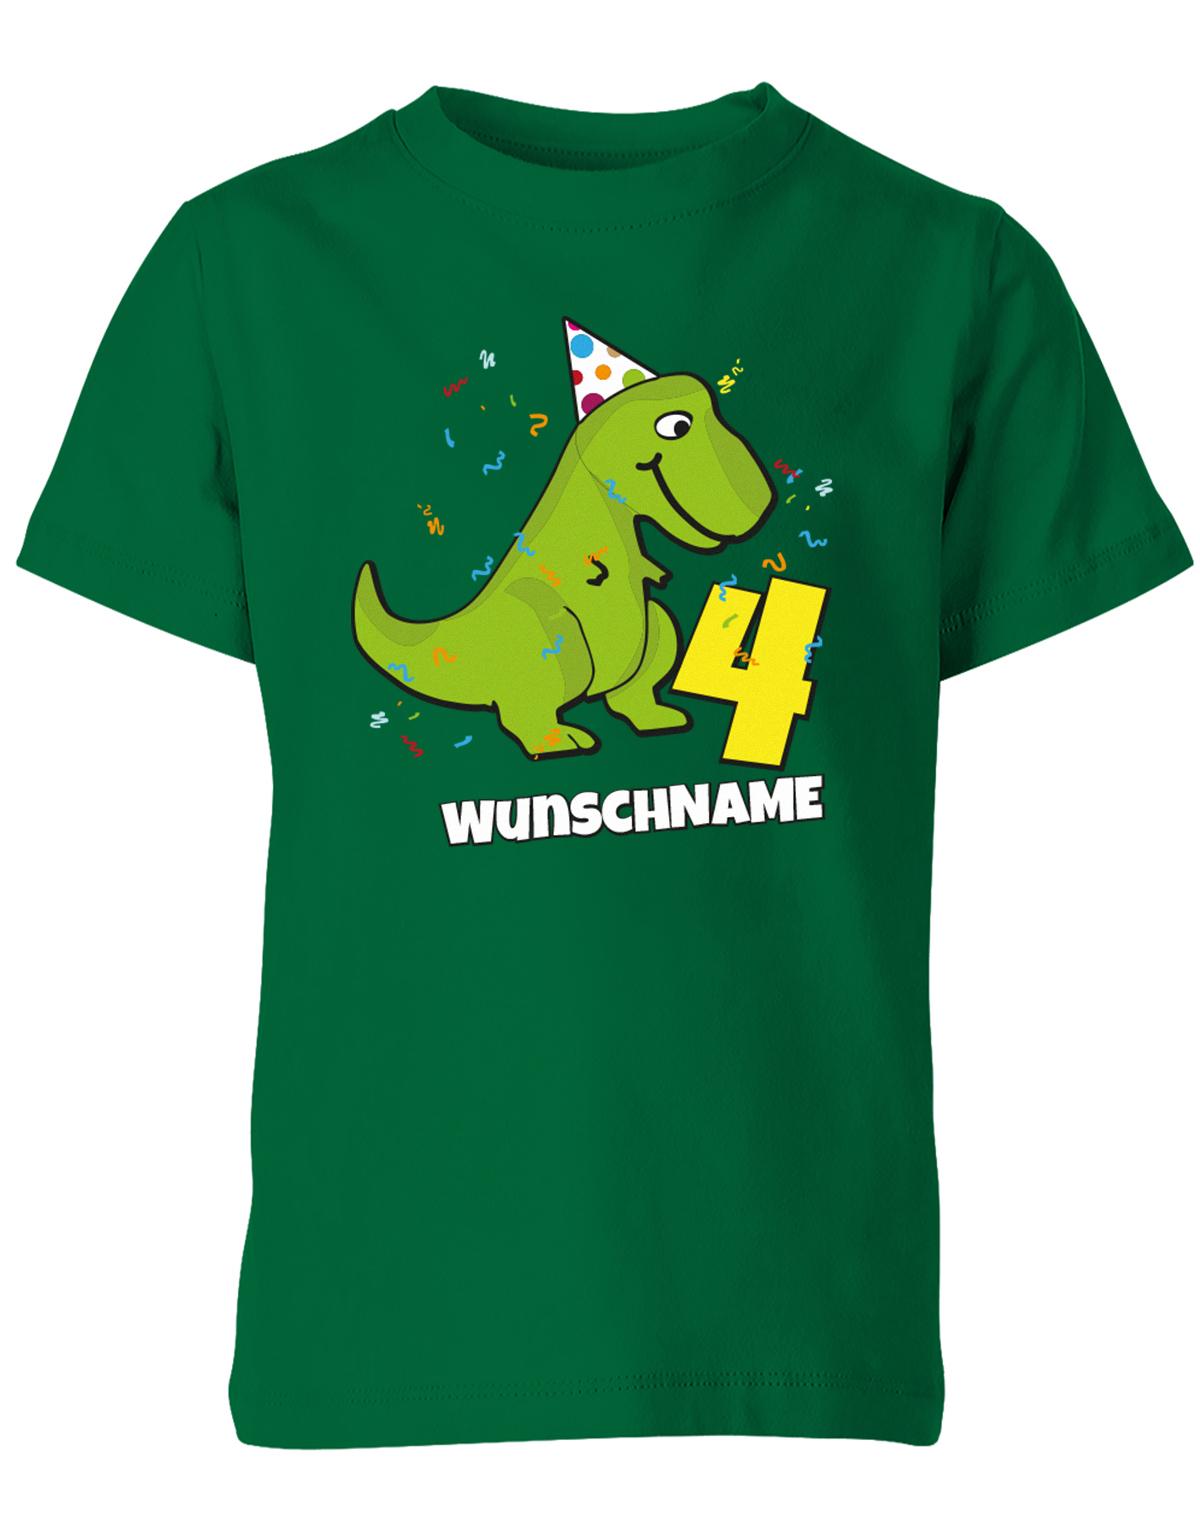 ich-bin-4-Dinosaurier-t-rex-wunschname-geburtstag-kinder-shirt-gruen